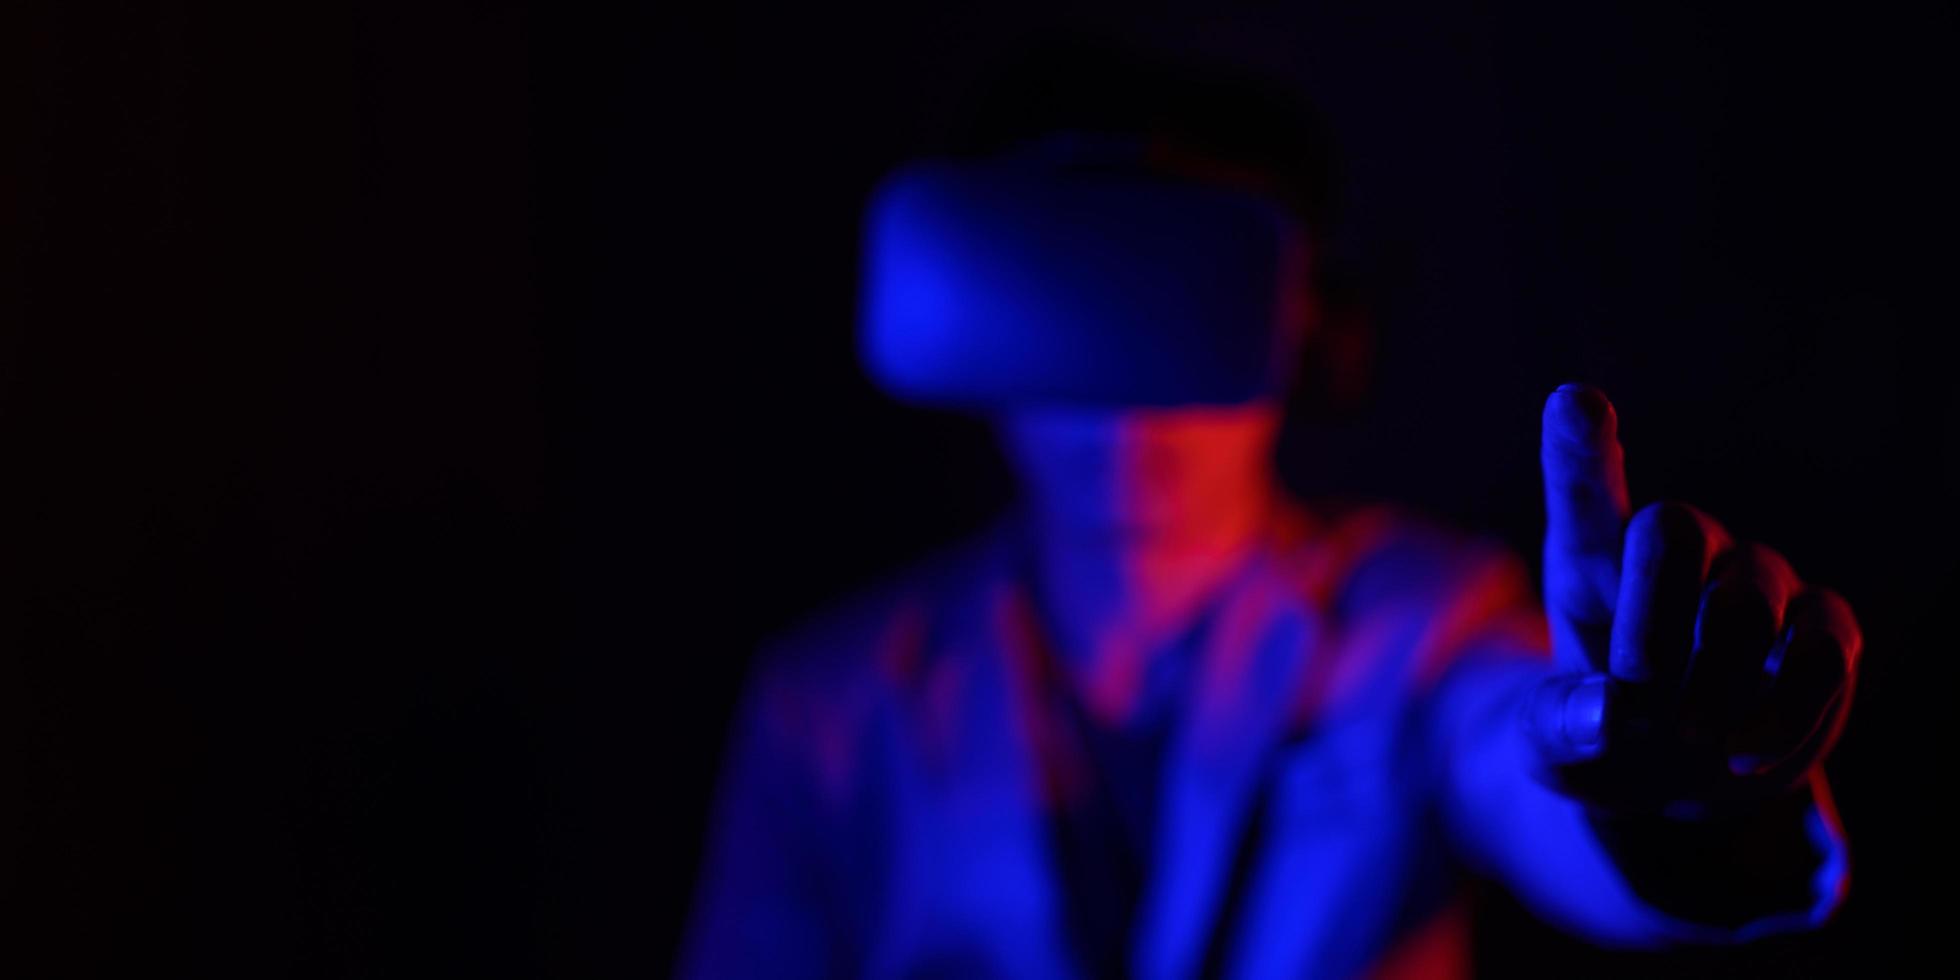 óculos de realidade virtual. realidade aumentada, jogo, conceito de tecnologia do futuro. vestido futurista do mundo simulado do metaverse postura corporal do vr foto